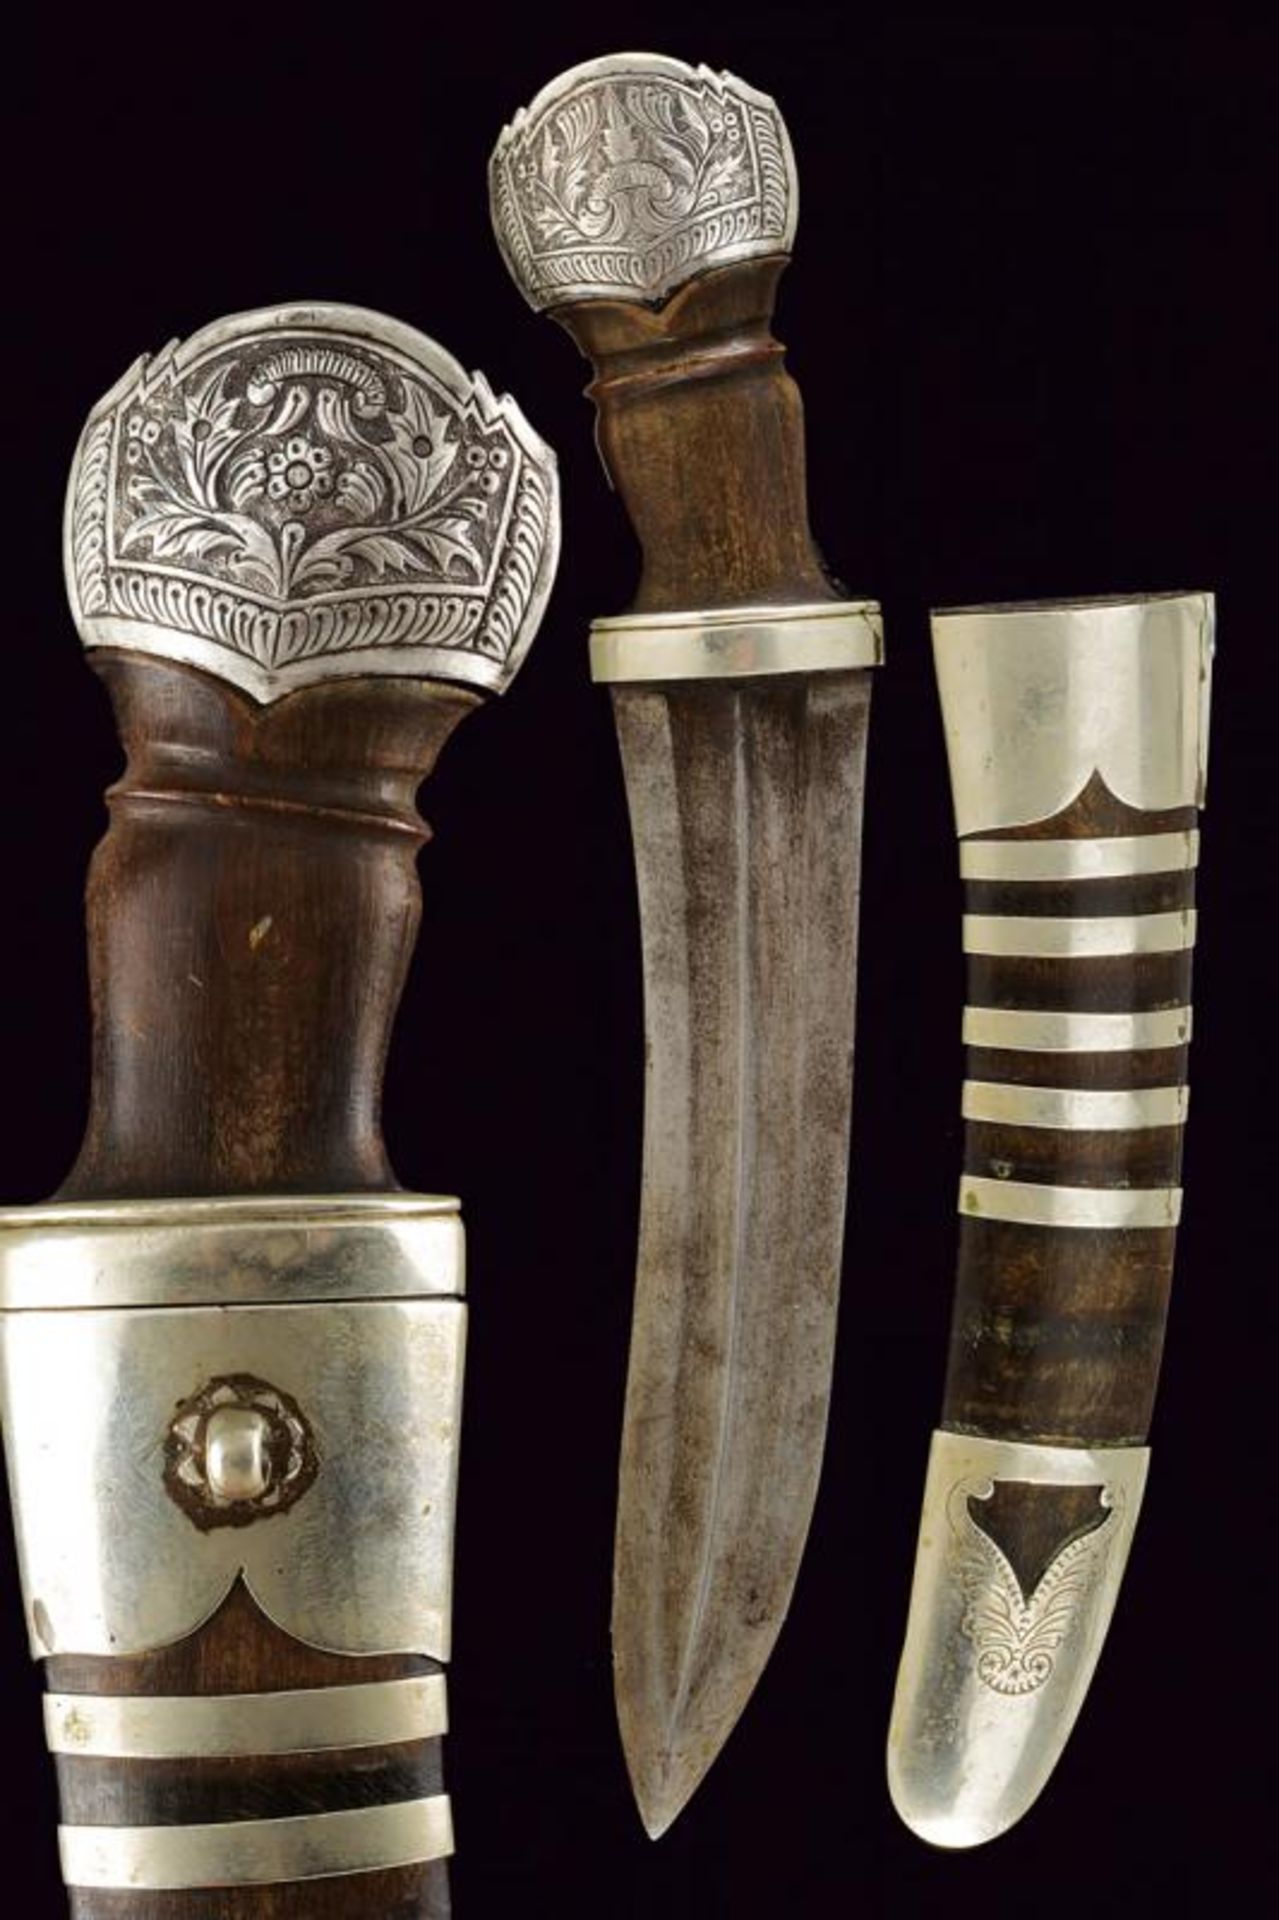 A silver mounted dagger